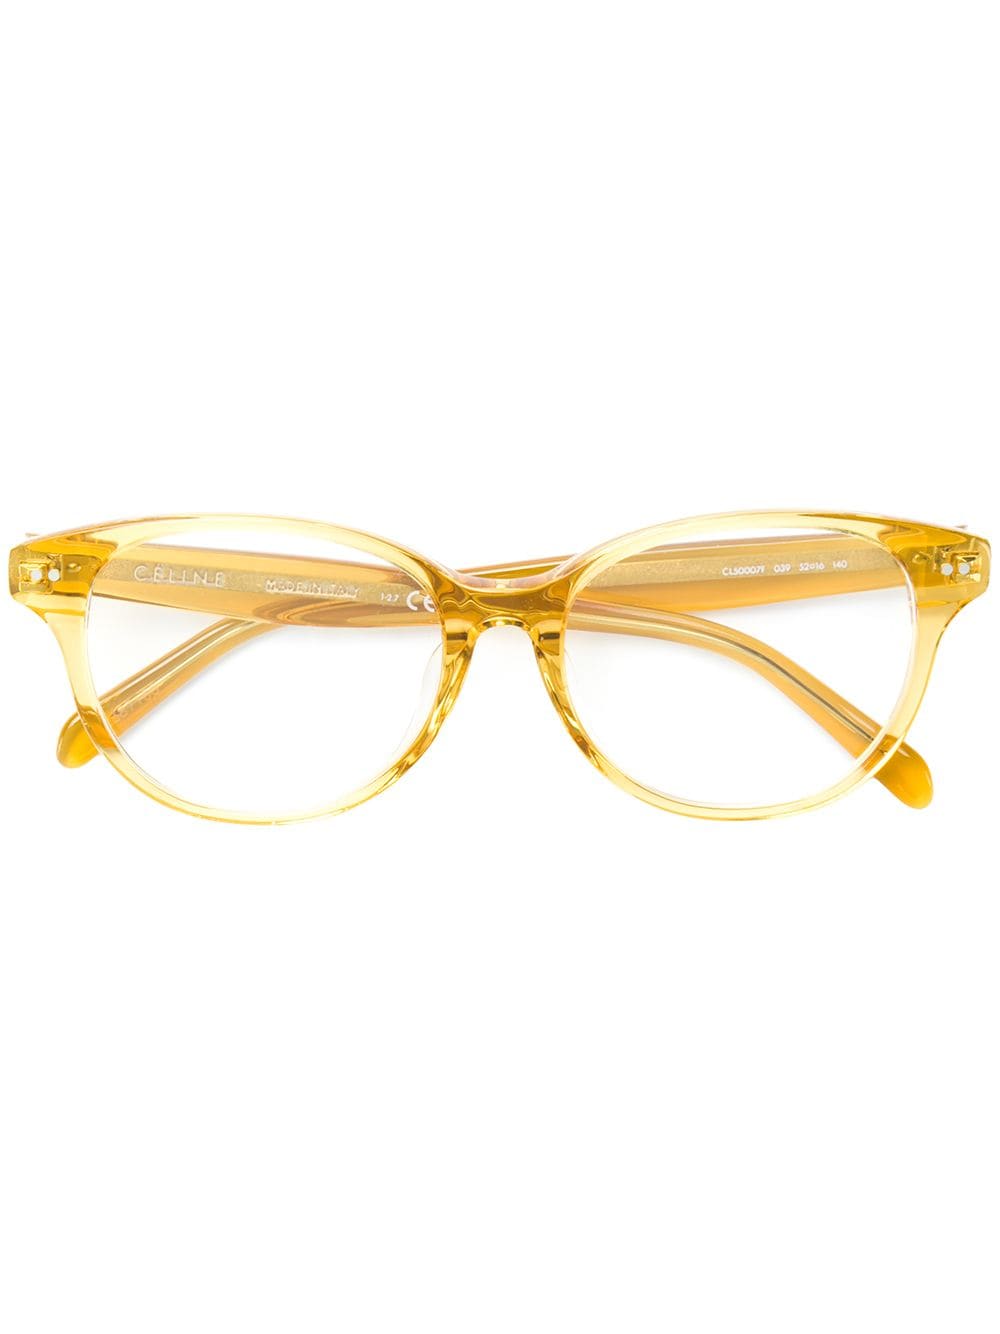 Celine Eyewear round shaped glasses - Yellow